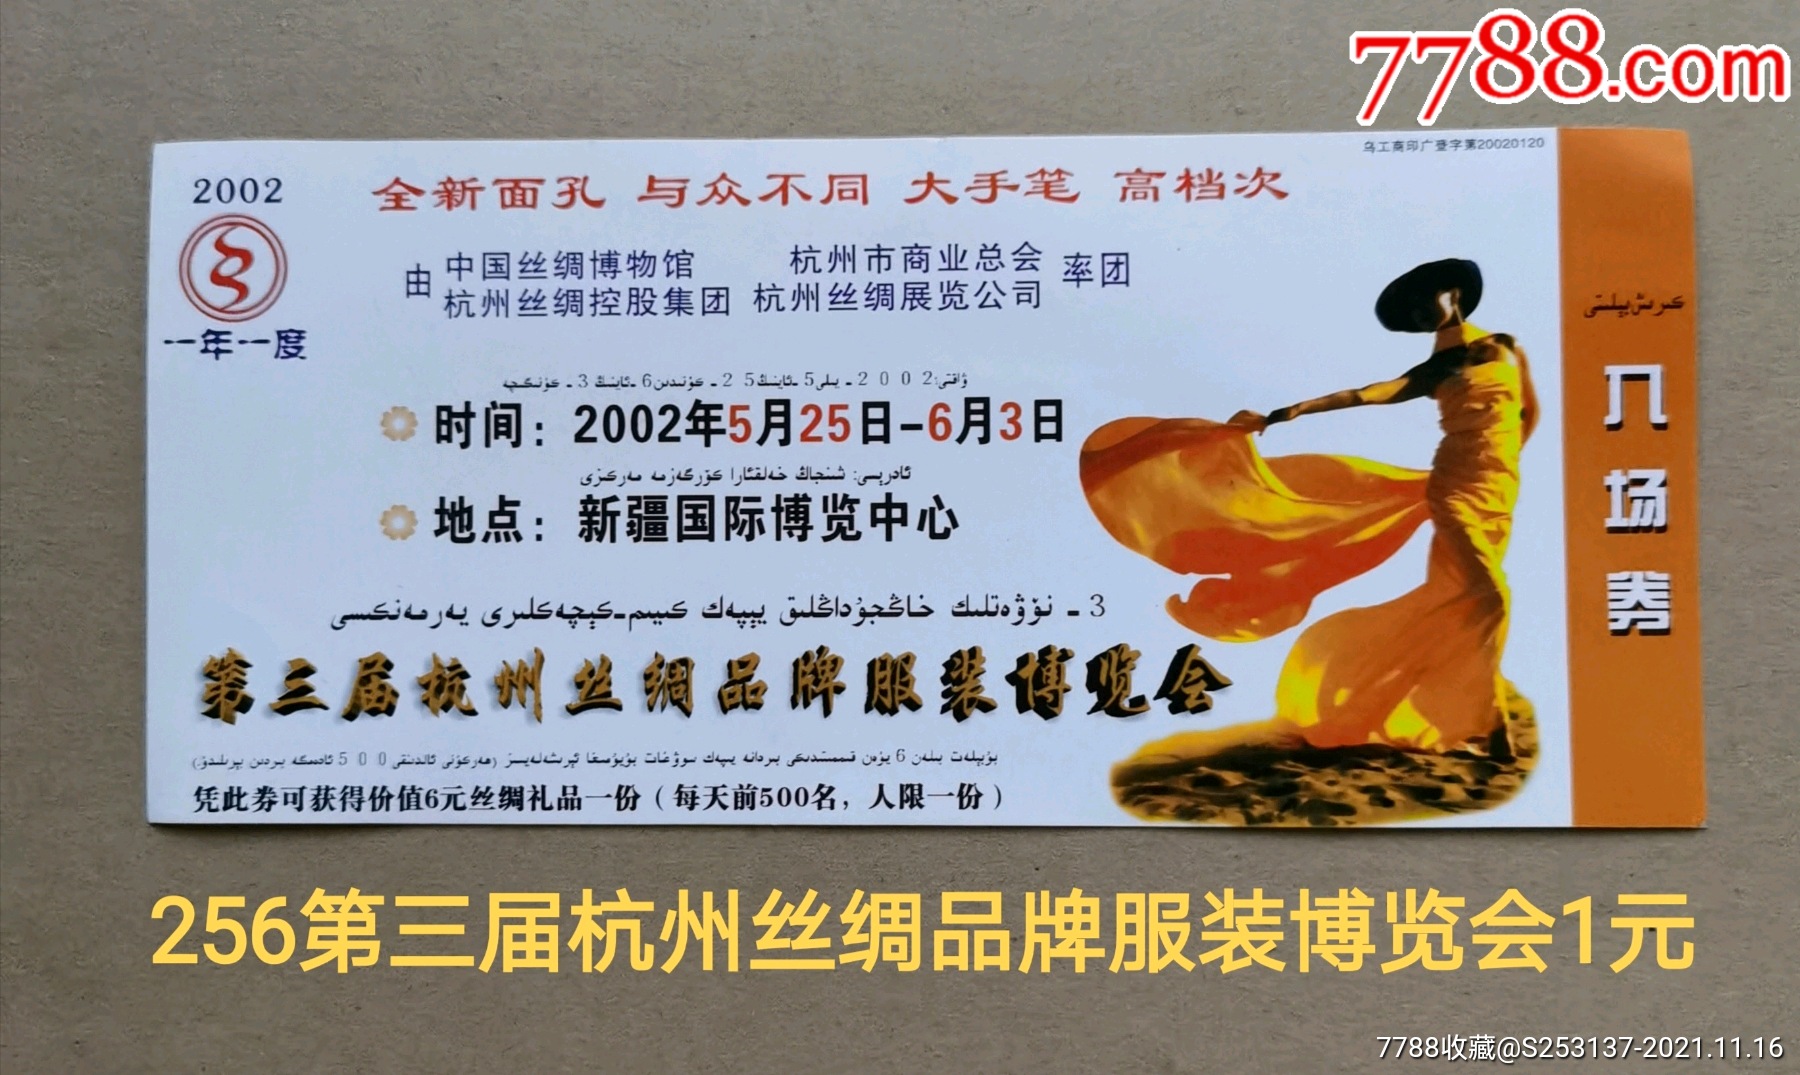 第三节杭州丝绸品牌服装展览会门票